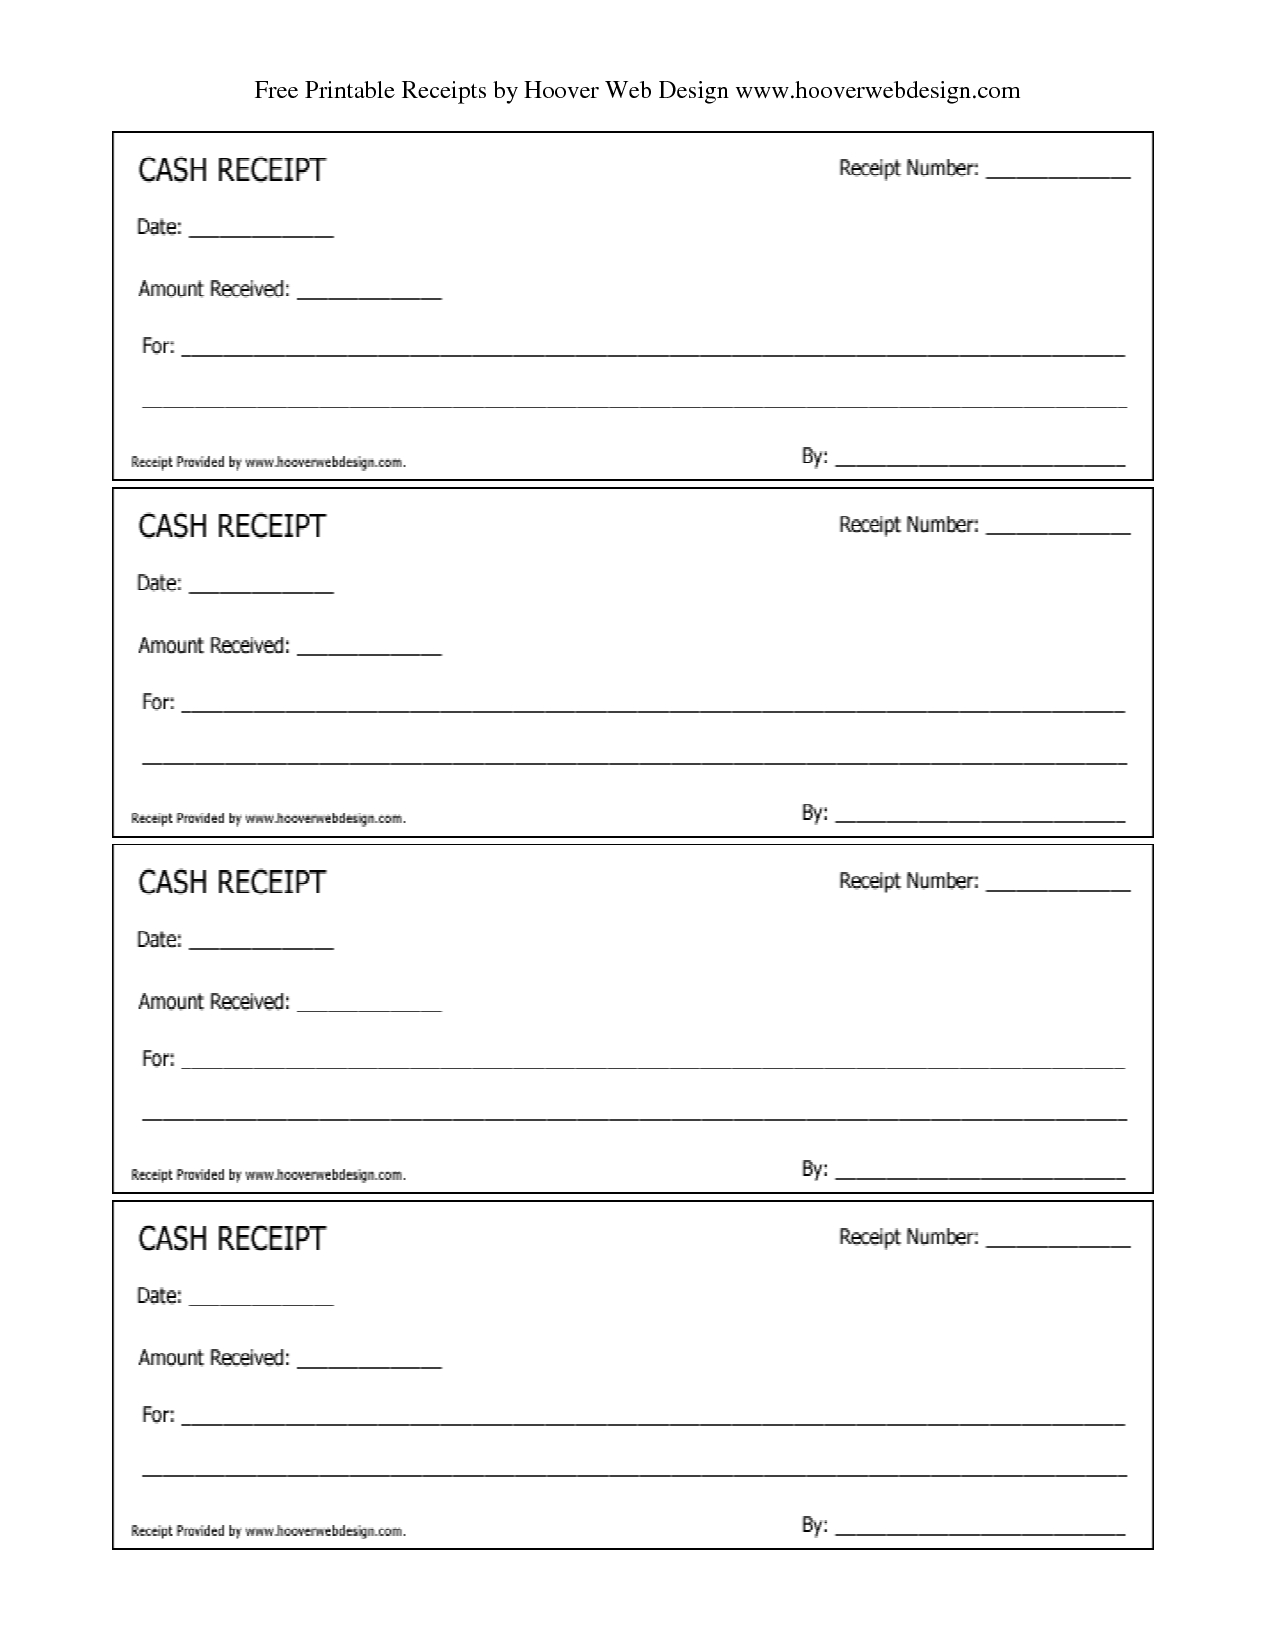 Free Printable Receipt Templates | Free Printable Cash Receipts - Free Printable Form Maker